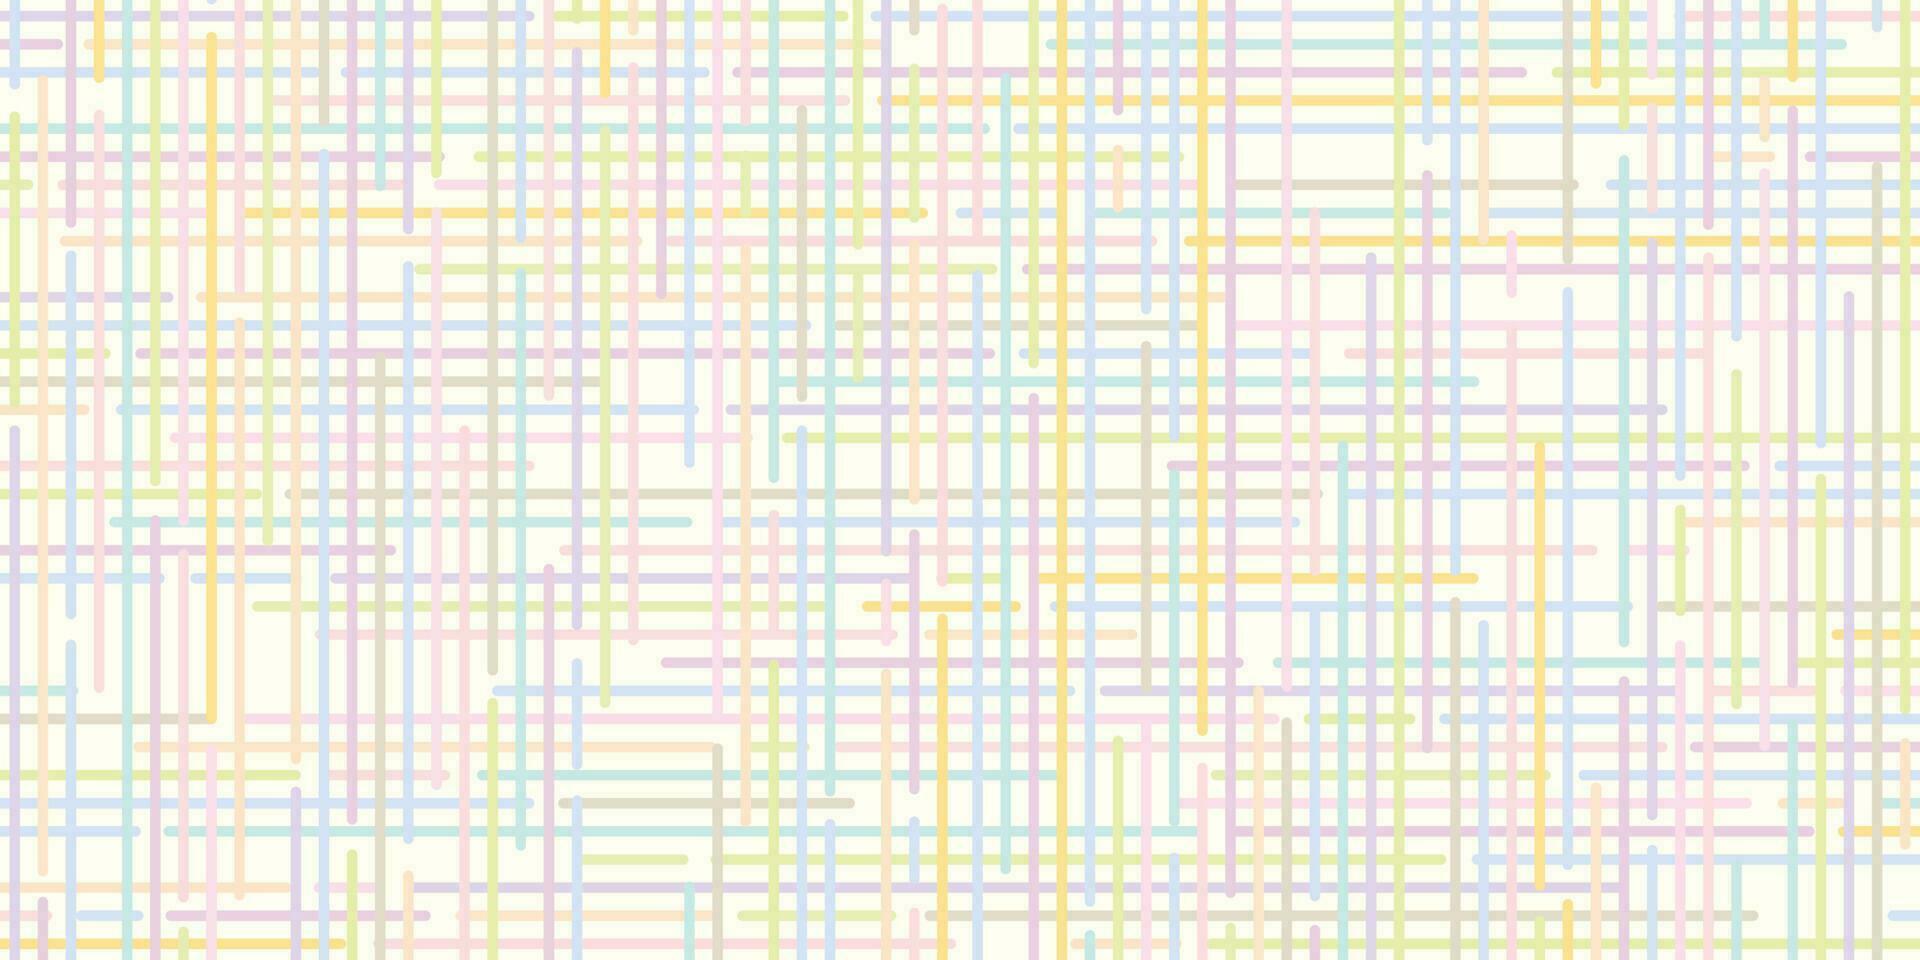 abstrakt pastell färger rader vertikal blandad med horisontell på vit bakgrund. fest inbjudan kort mall vektor illustration.